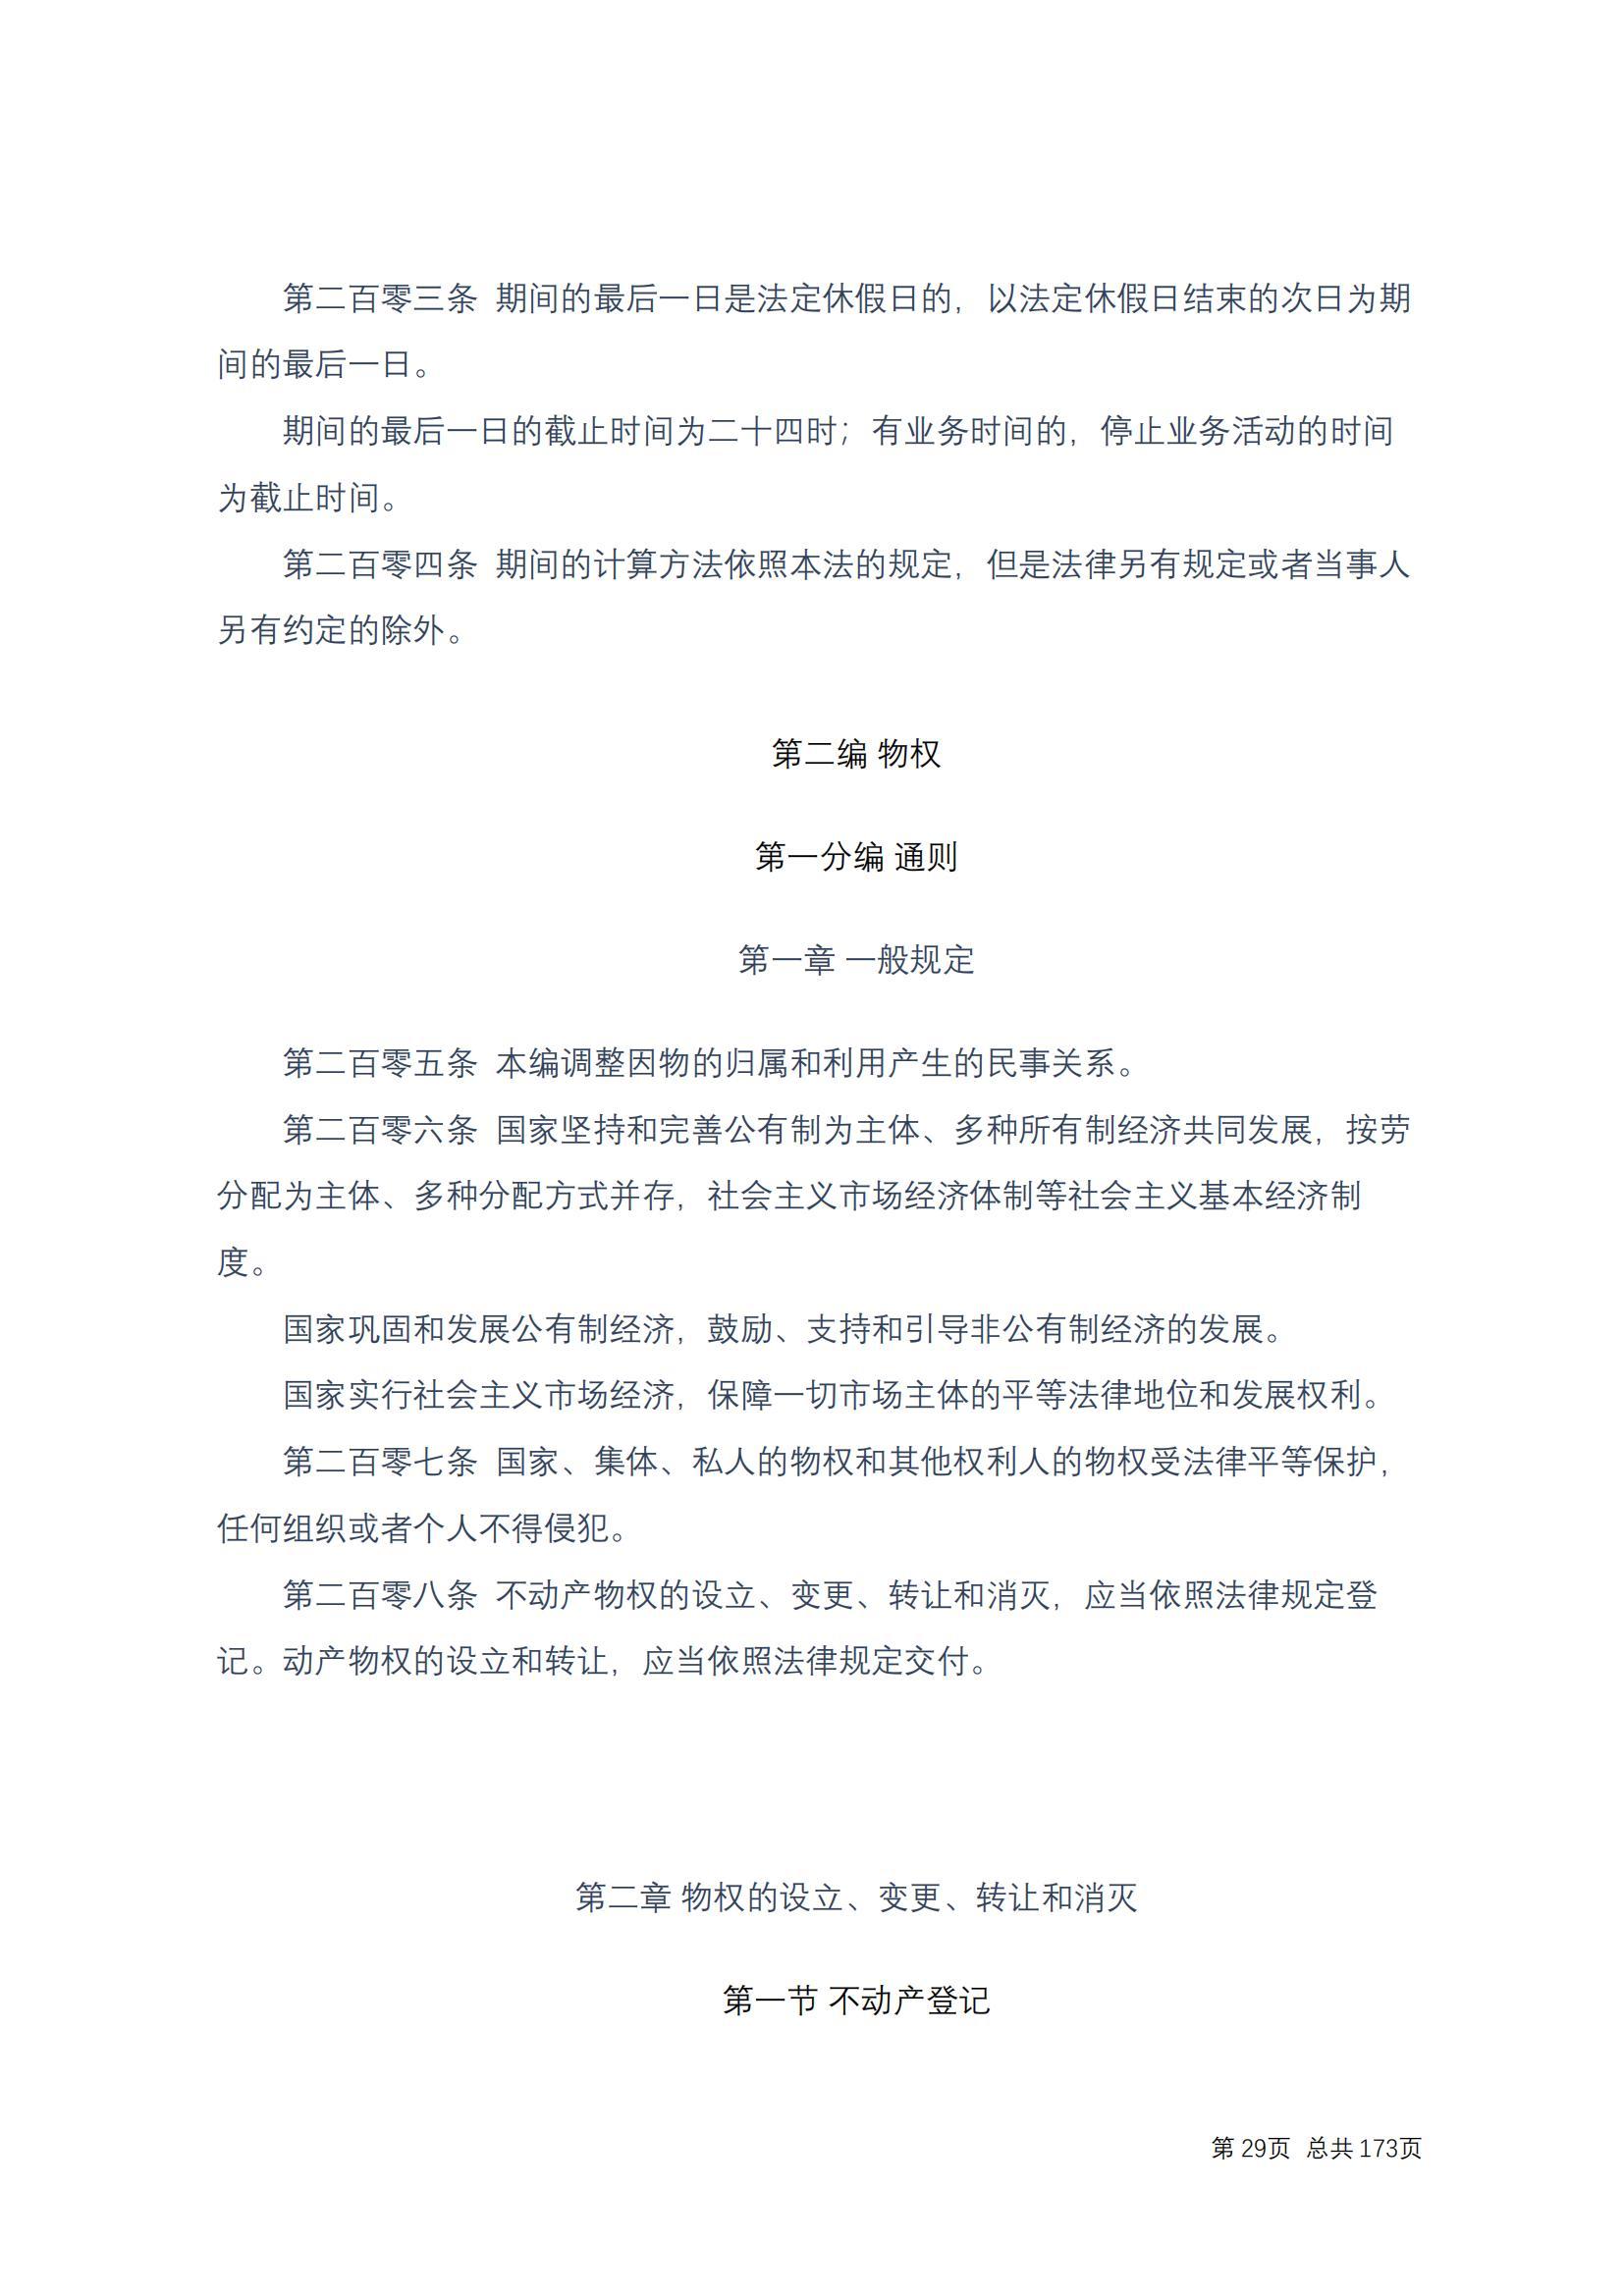 中华人民共和国民法典 修改过_28